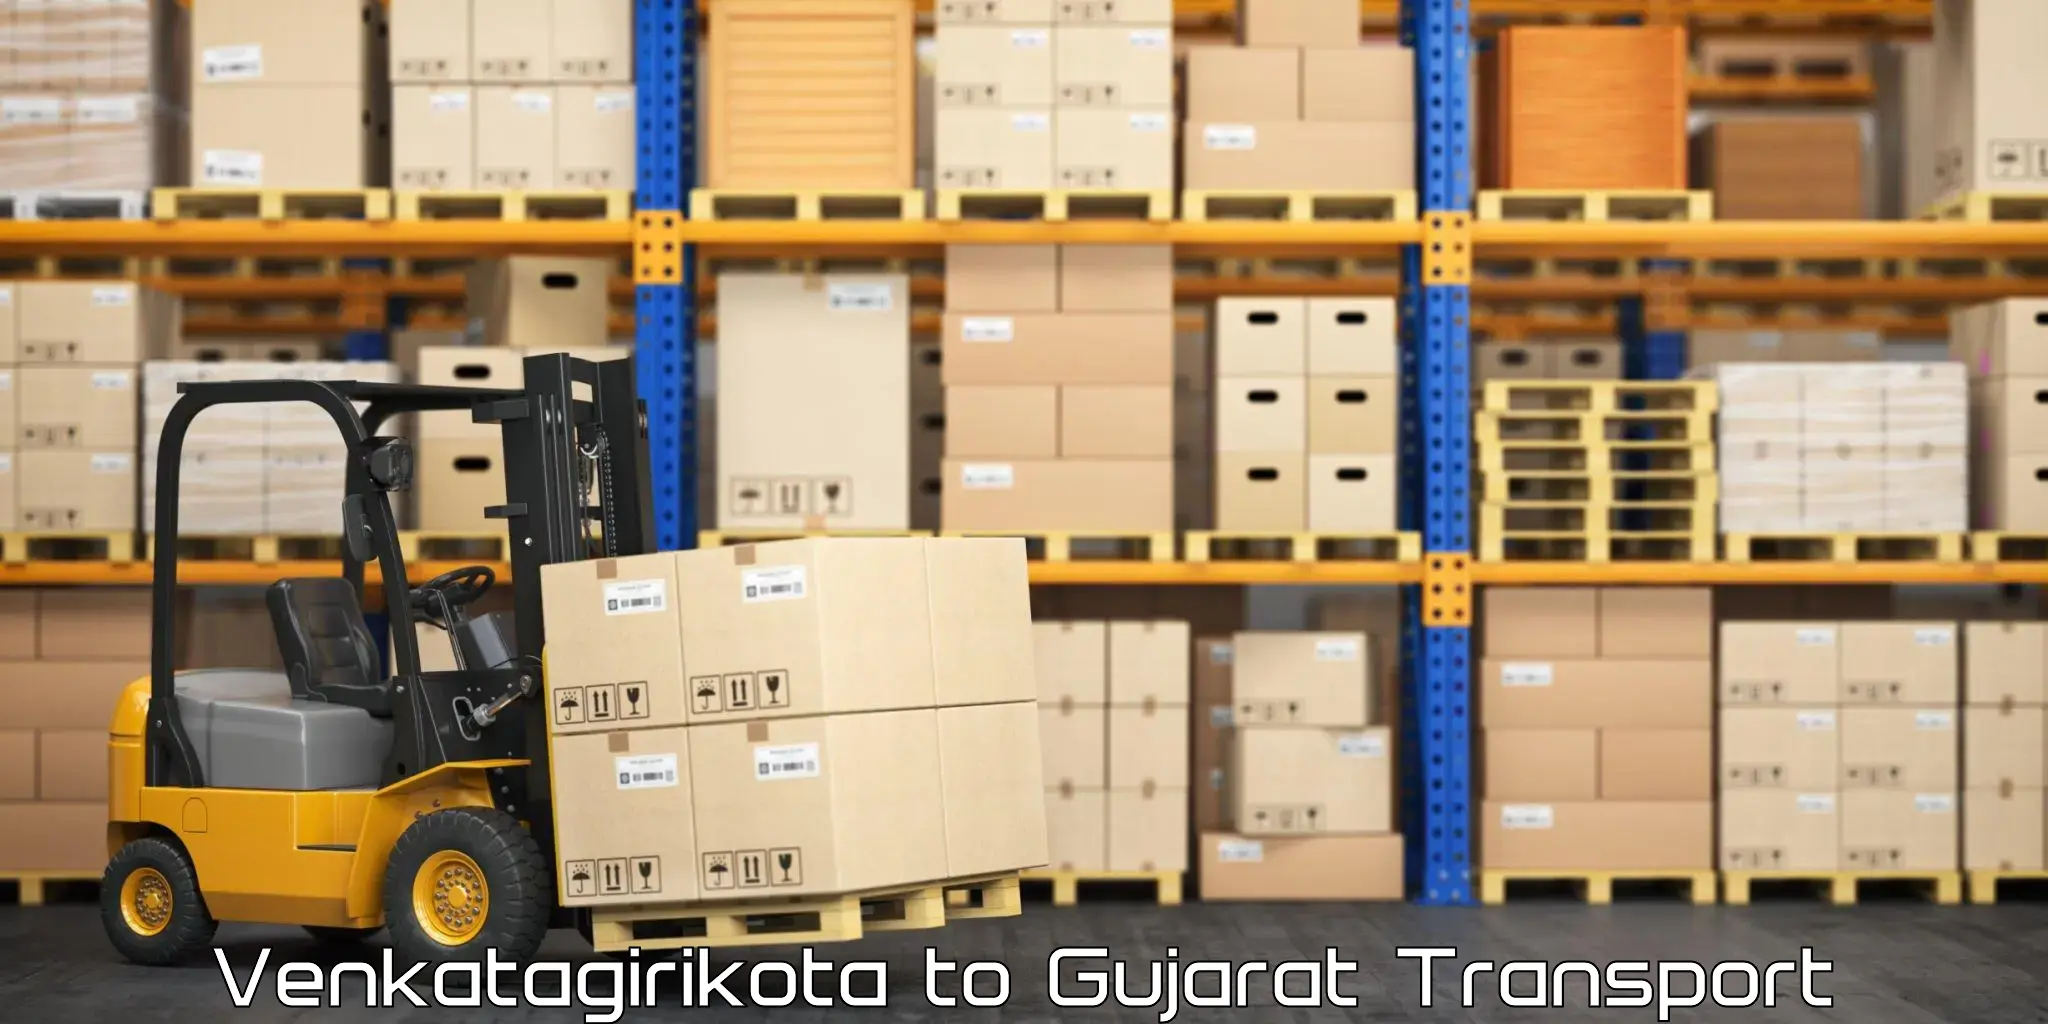 Cargo transportation services Venkatagirikota to Sanand